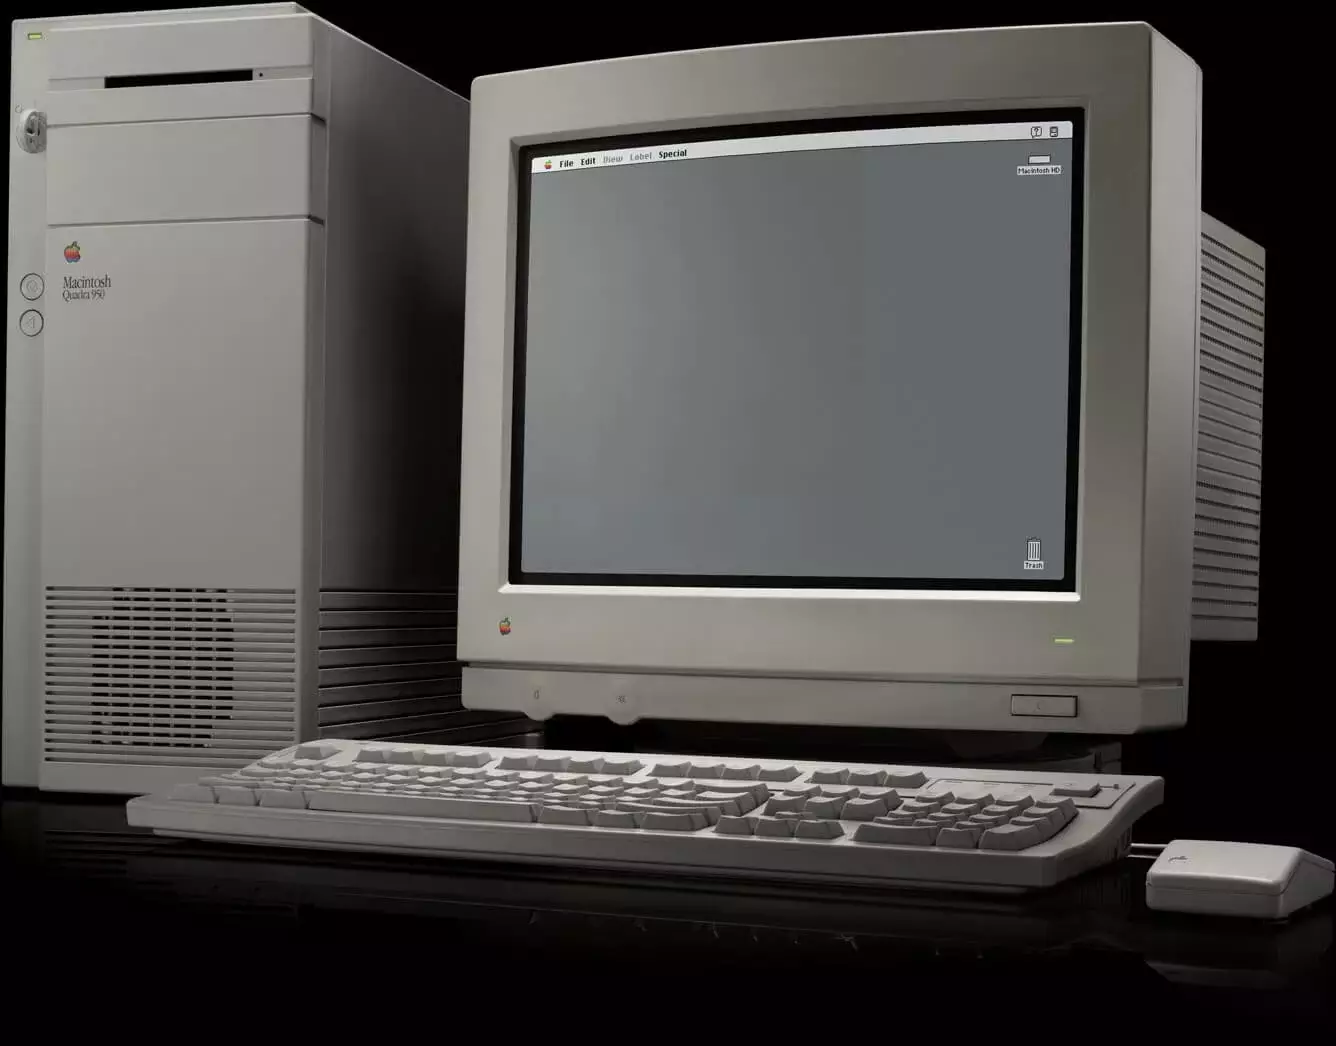 Оригинальный компьютер Macintosh Quadra 900 с Mac OS 8